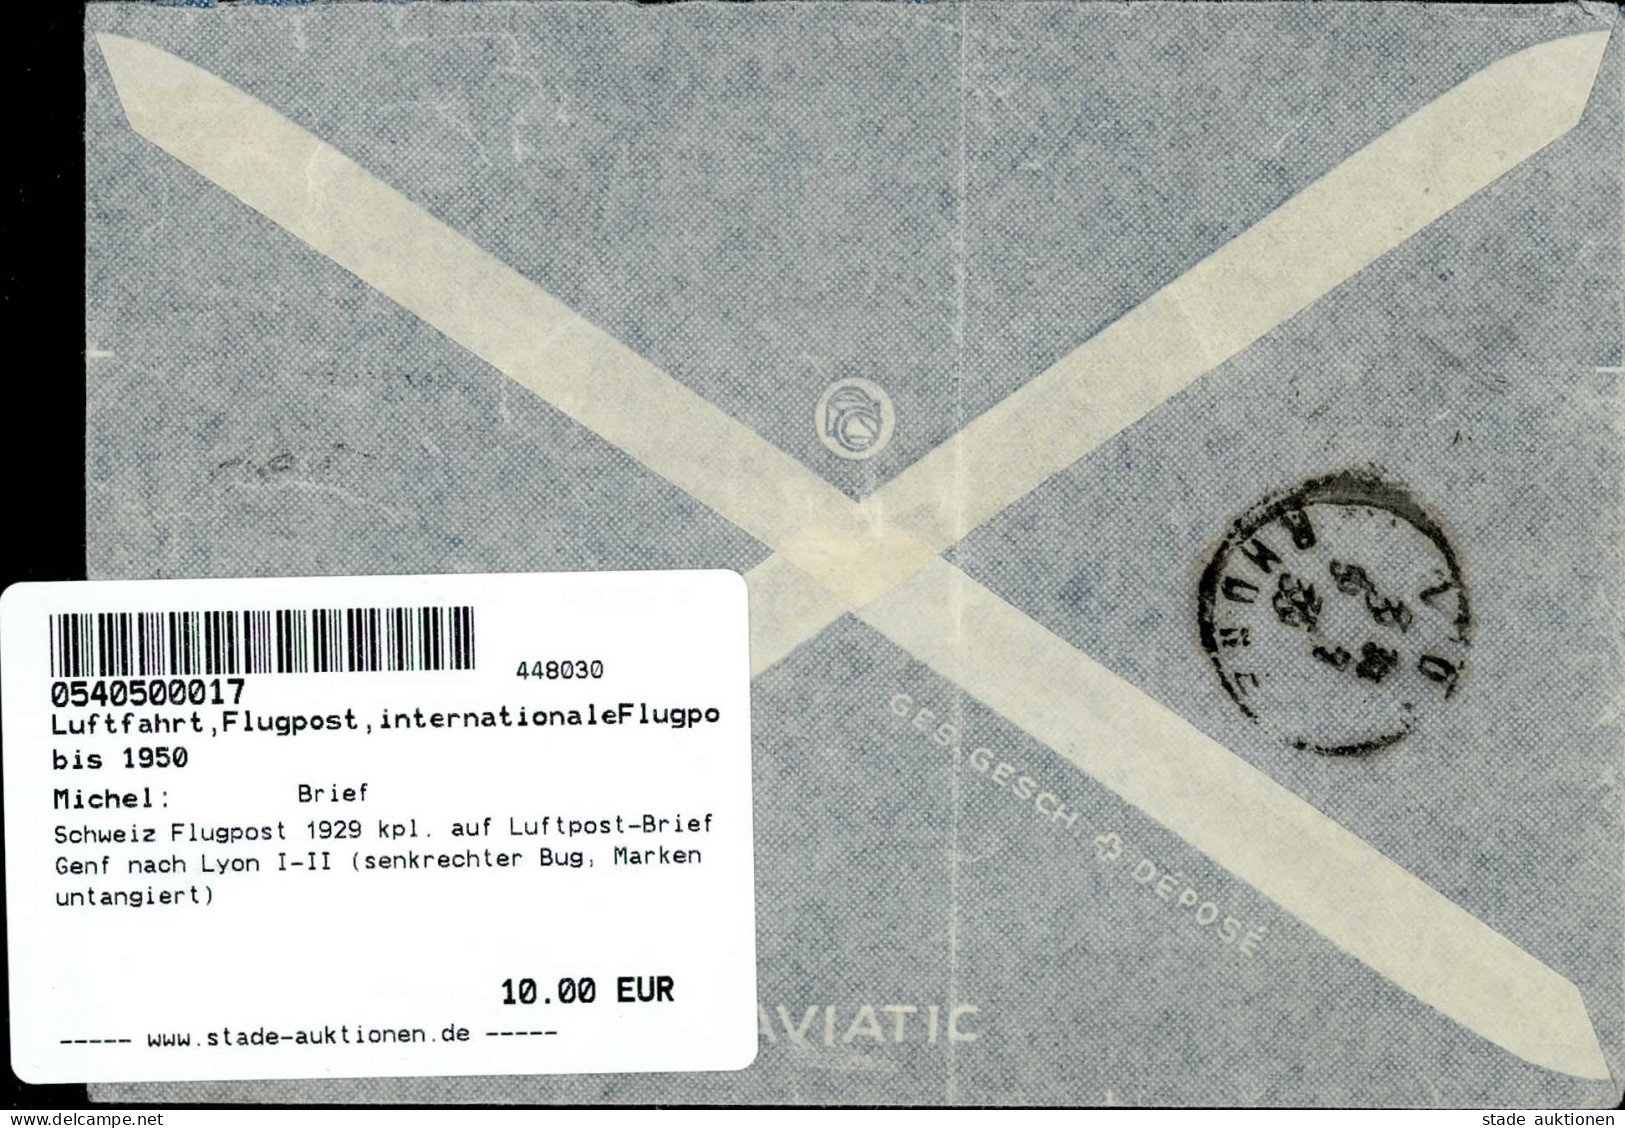 Schweiz Flugpost 1929 Kpl. Auf Luftpost-Brief Genf Nach Lyon I-II (senkrechter Bug, Marken Untangiert) - War 1914-18